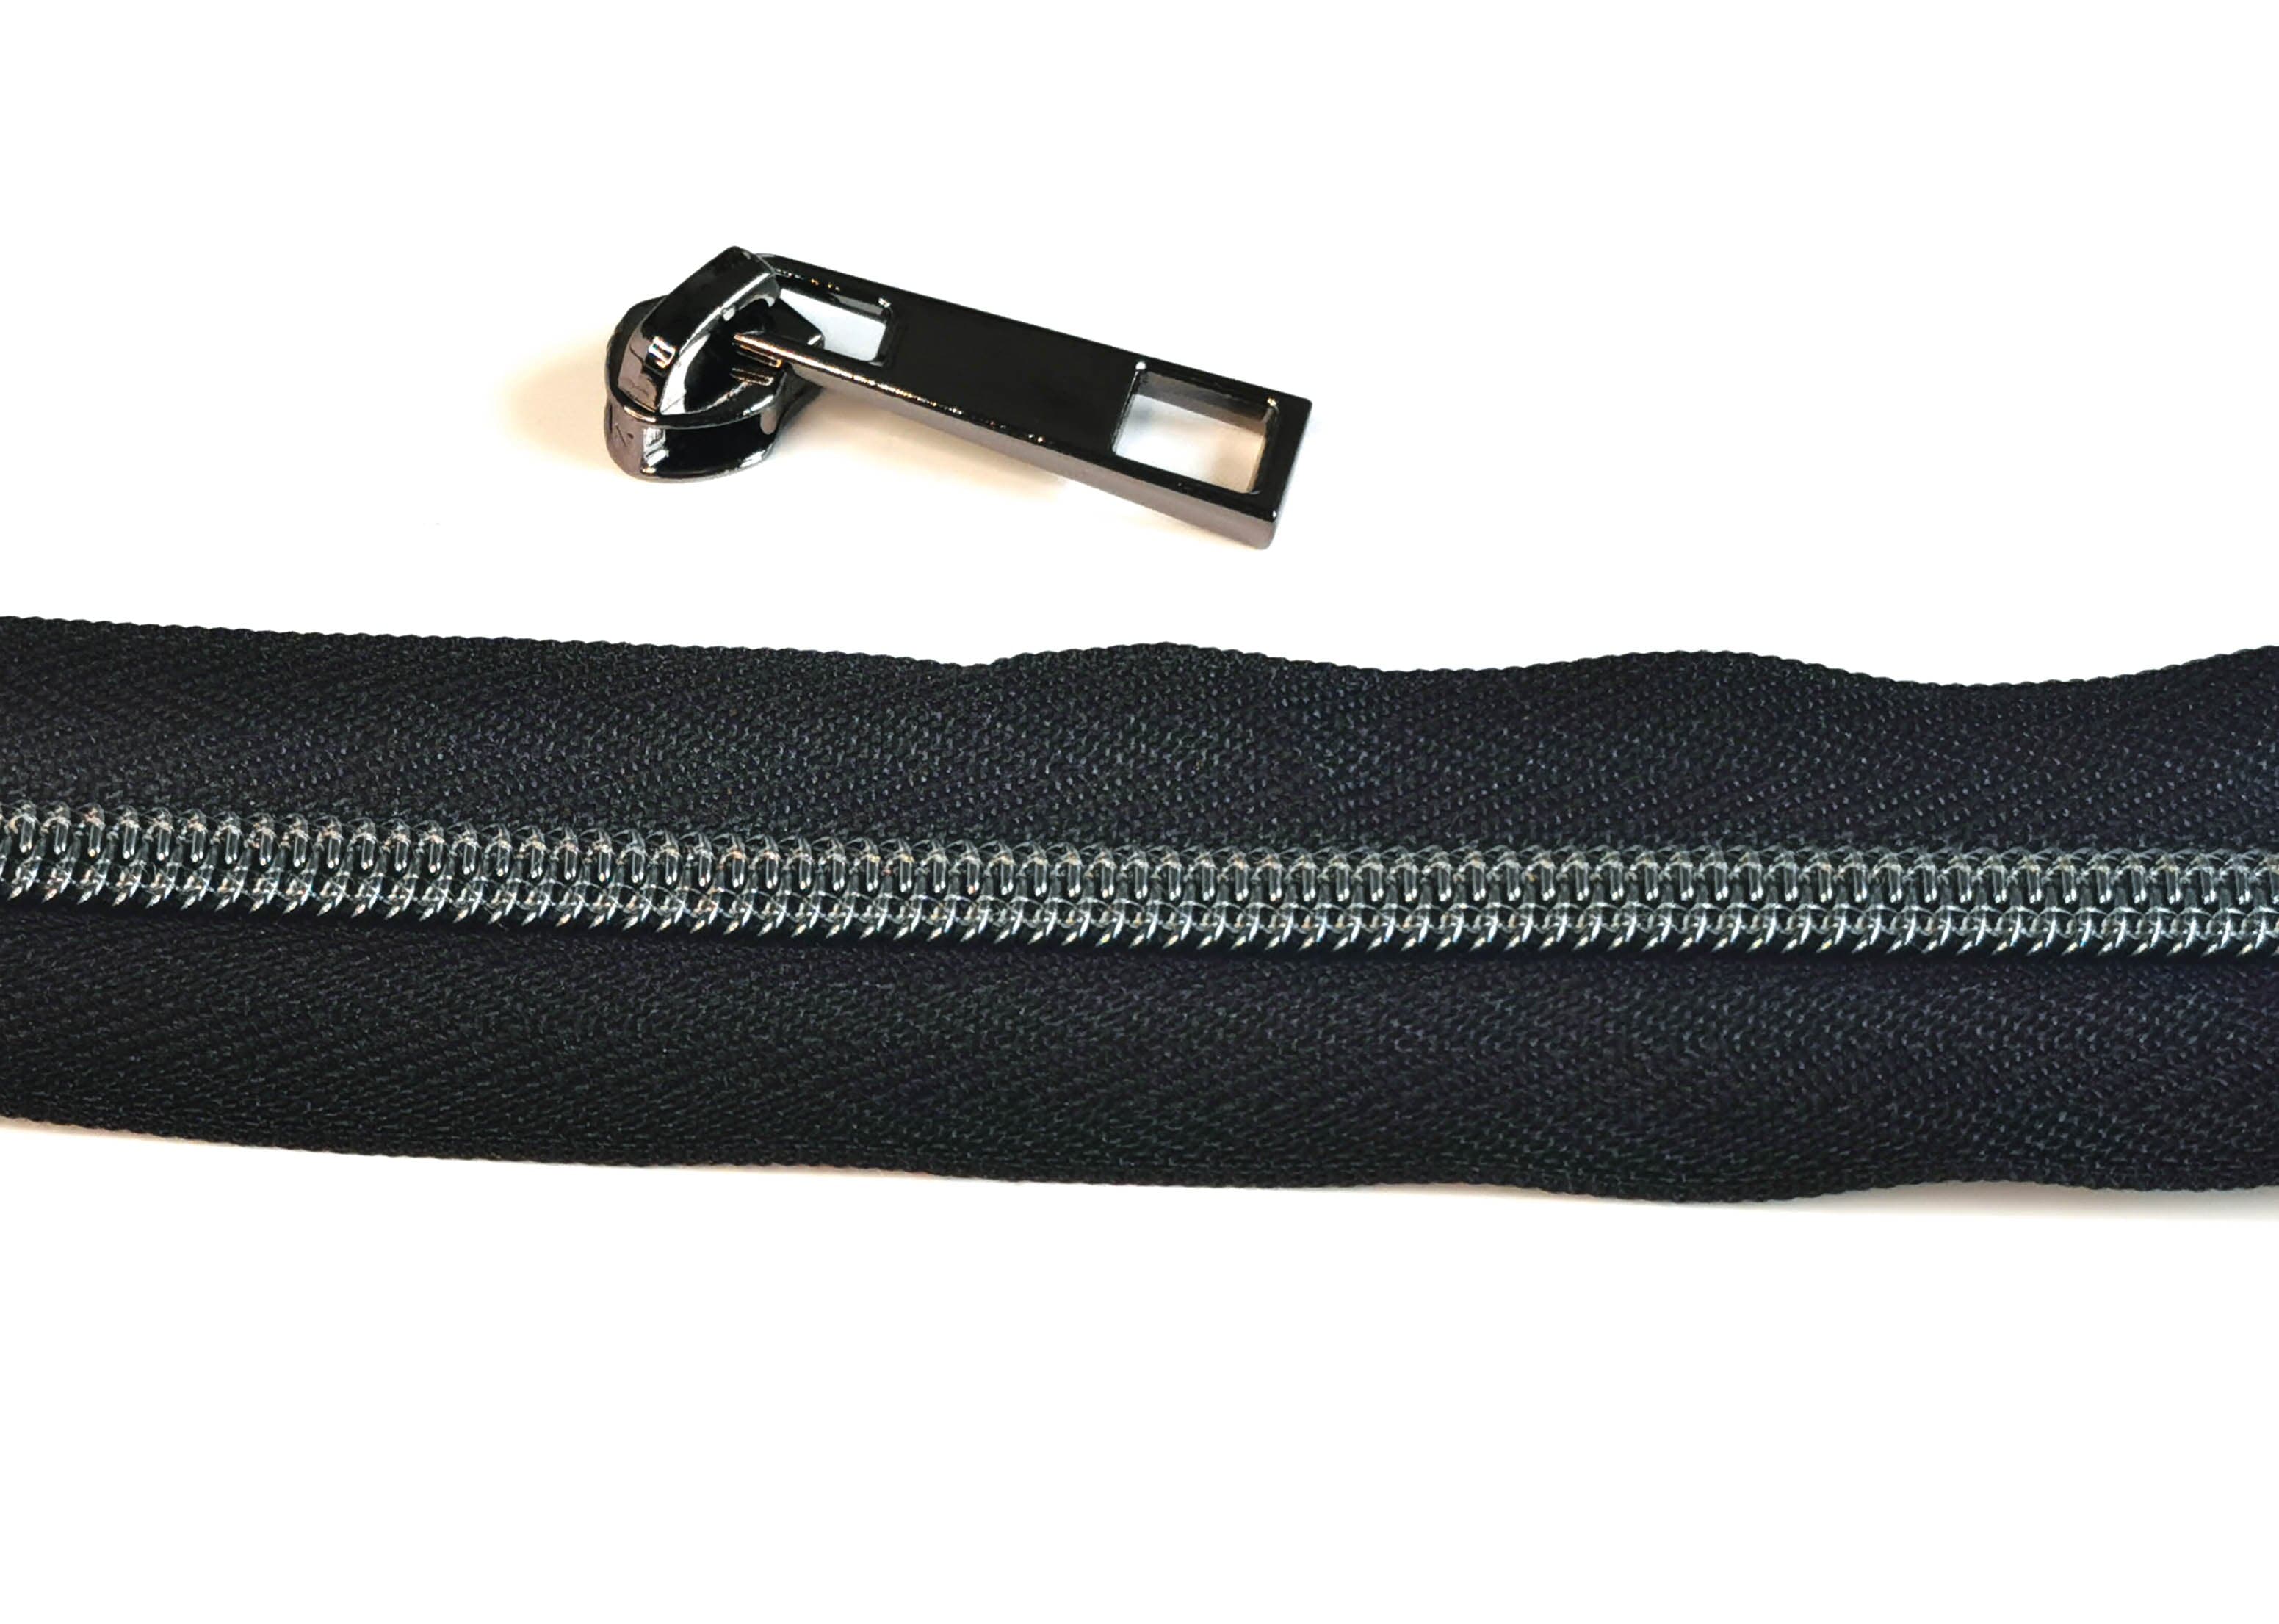 Kiwi Bagineers Zippers Black / Gunmetal Zipper Tape. 30" 76cm of #5 Zipper tape with 2 Zipper Sliders/Pullers By Kiwi Bagineers